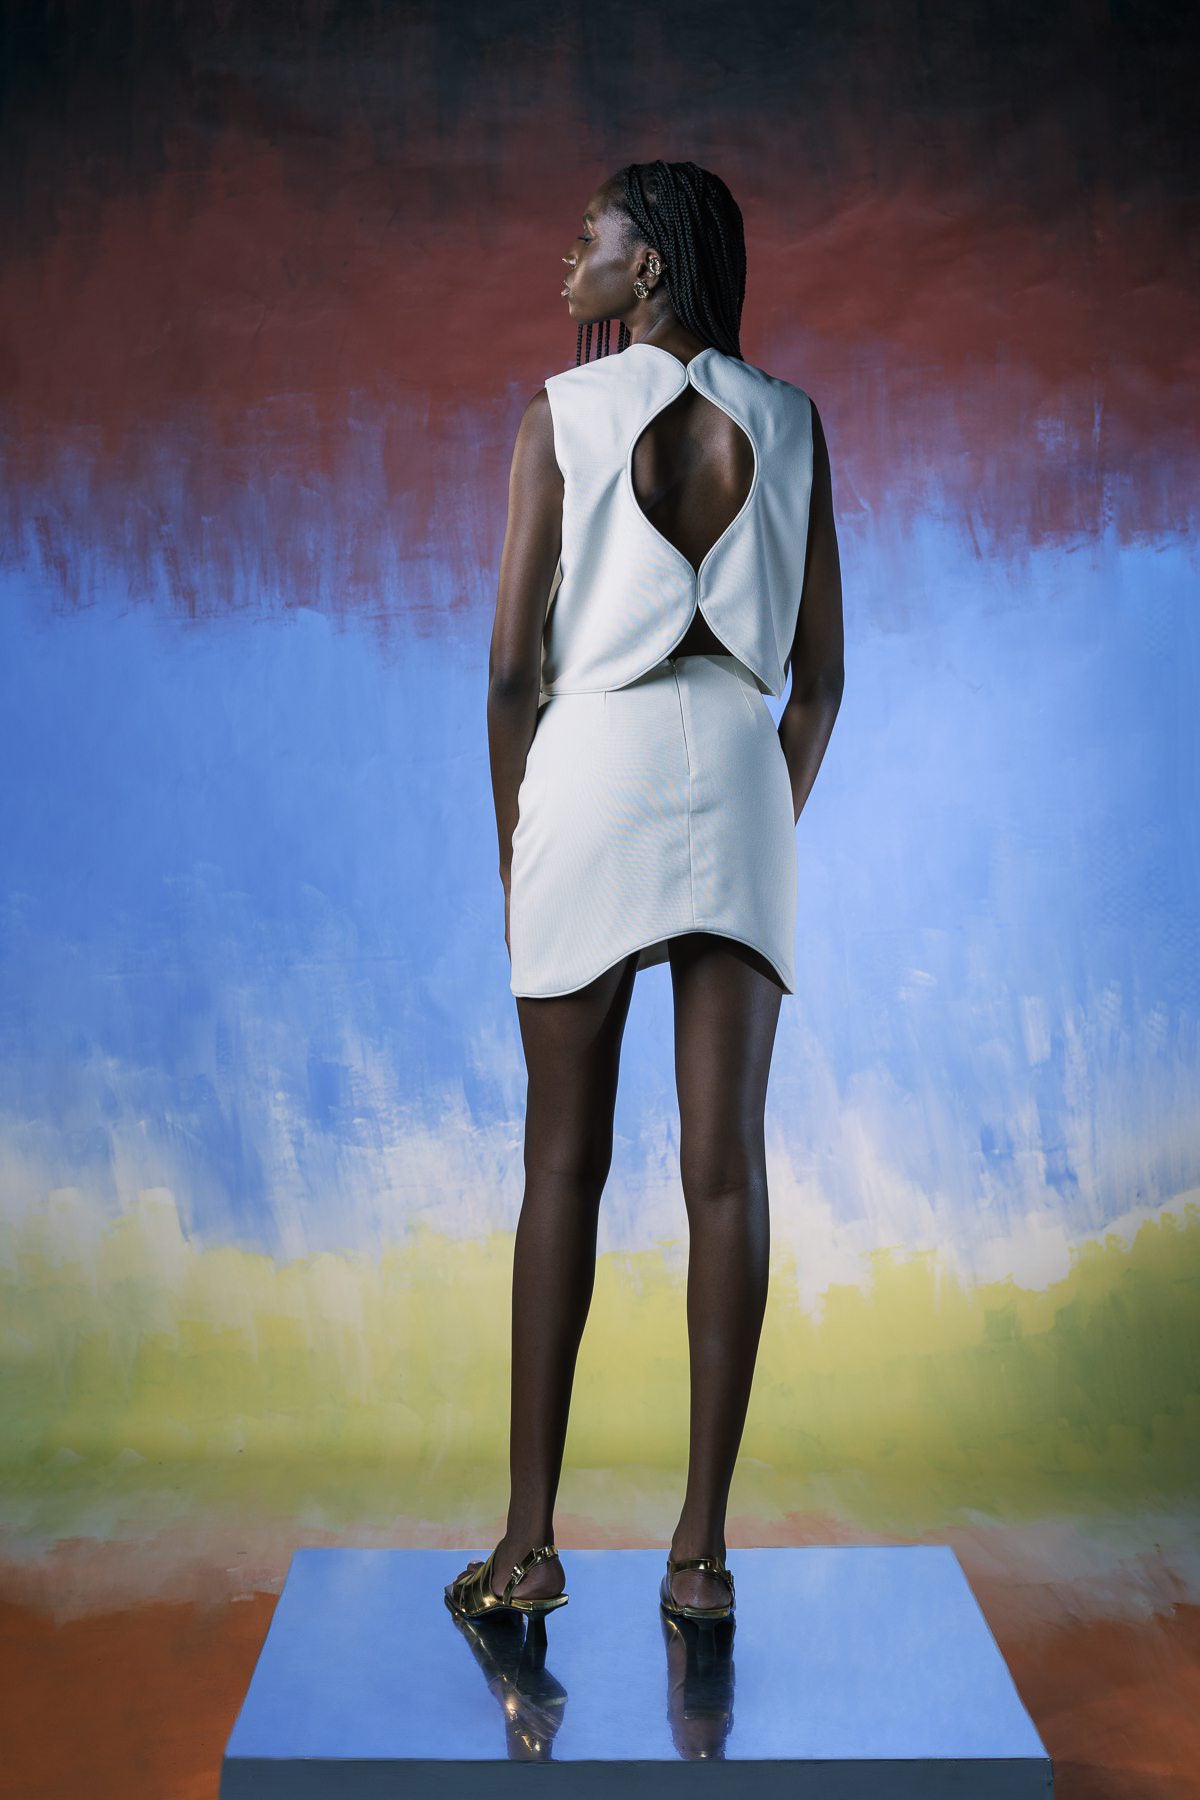 Irregular Off White Mini Skirt - Shantall Lacayo